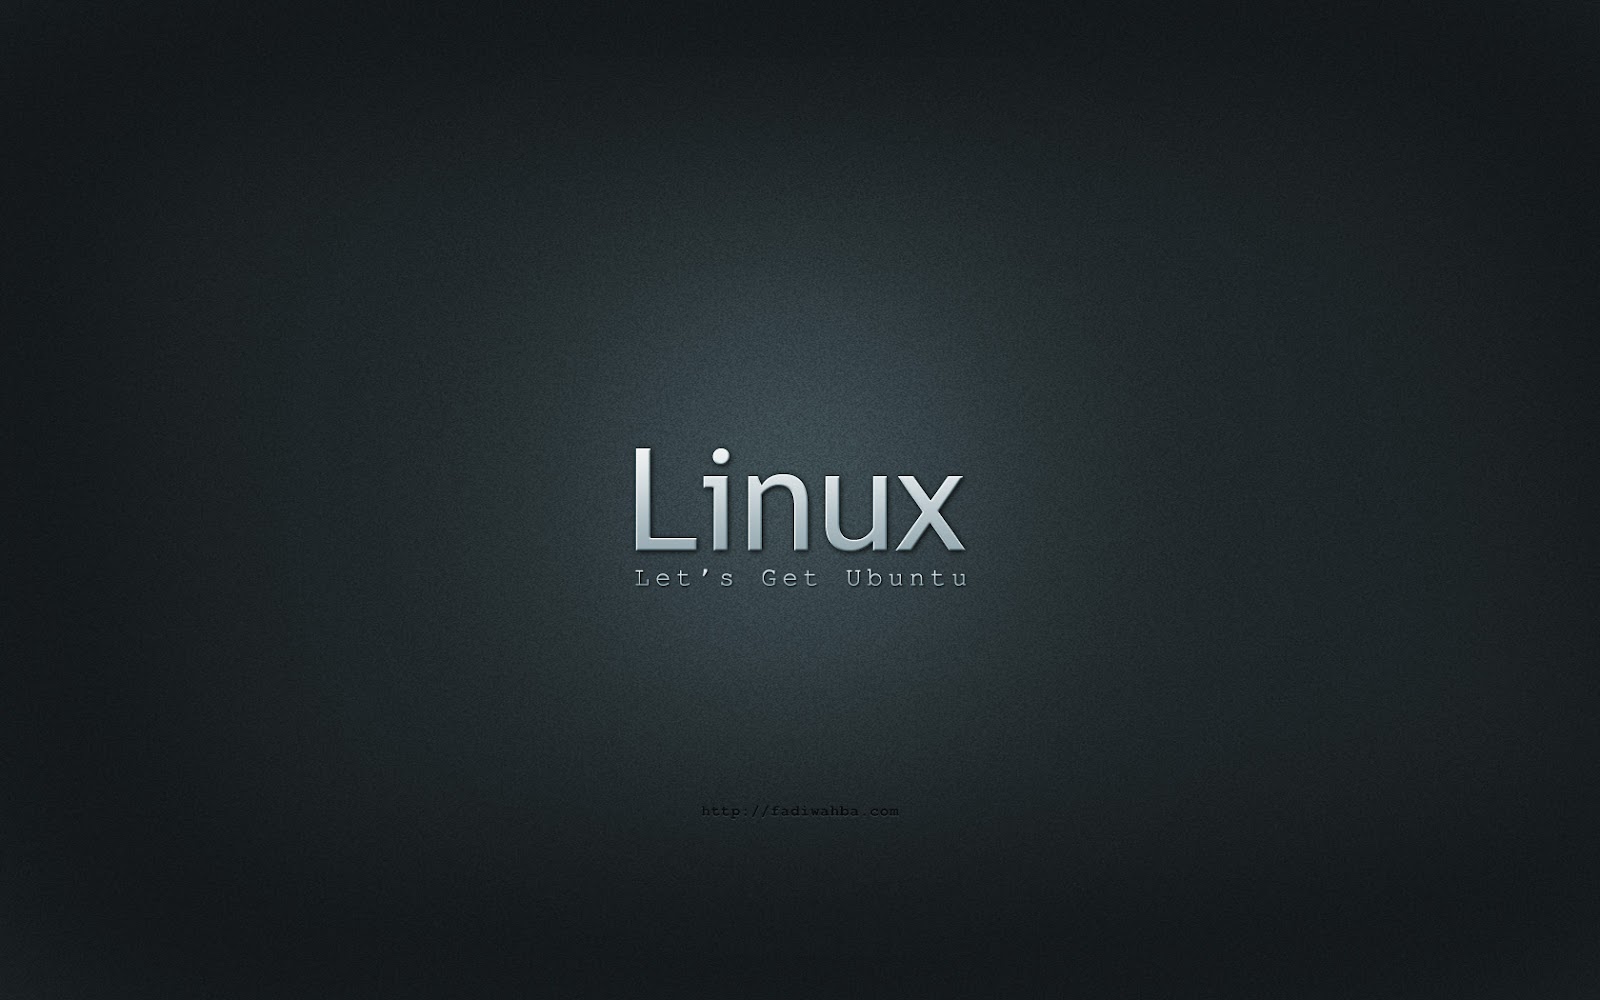 Ubuntu_Linux_by_Designologer.jpg